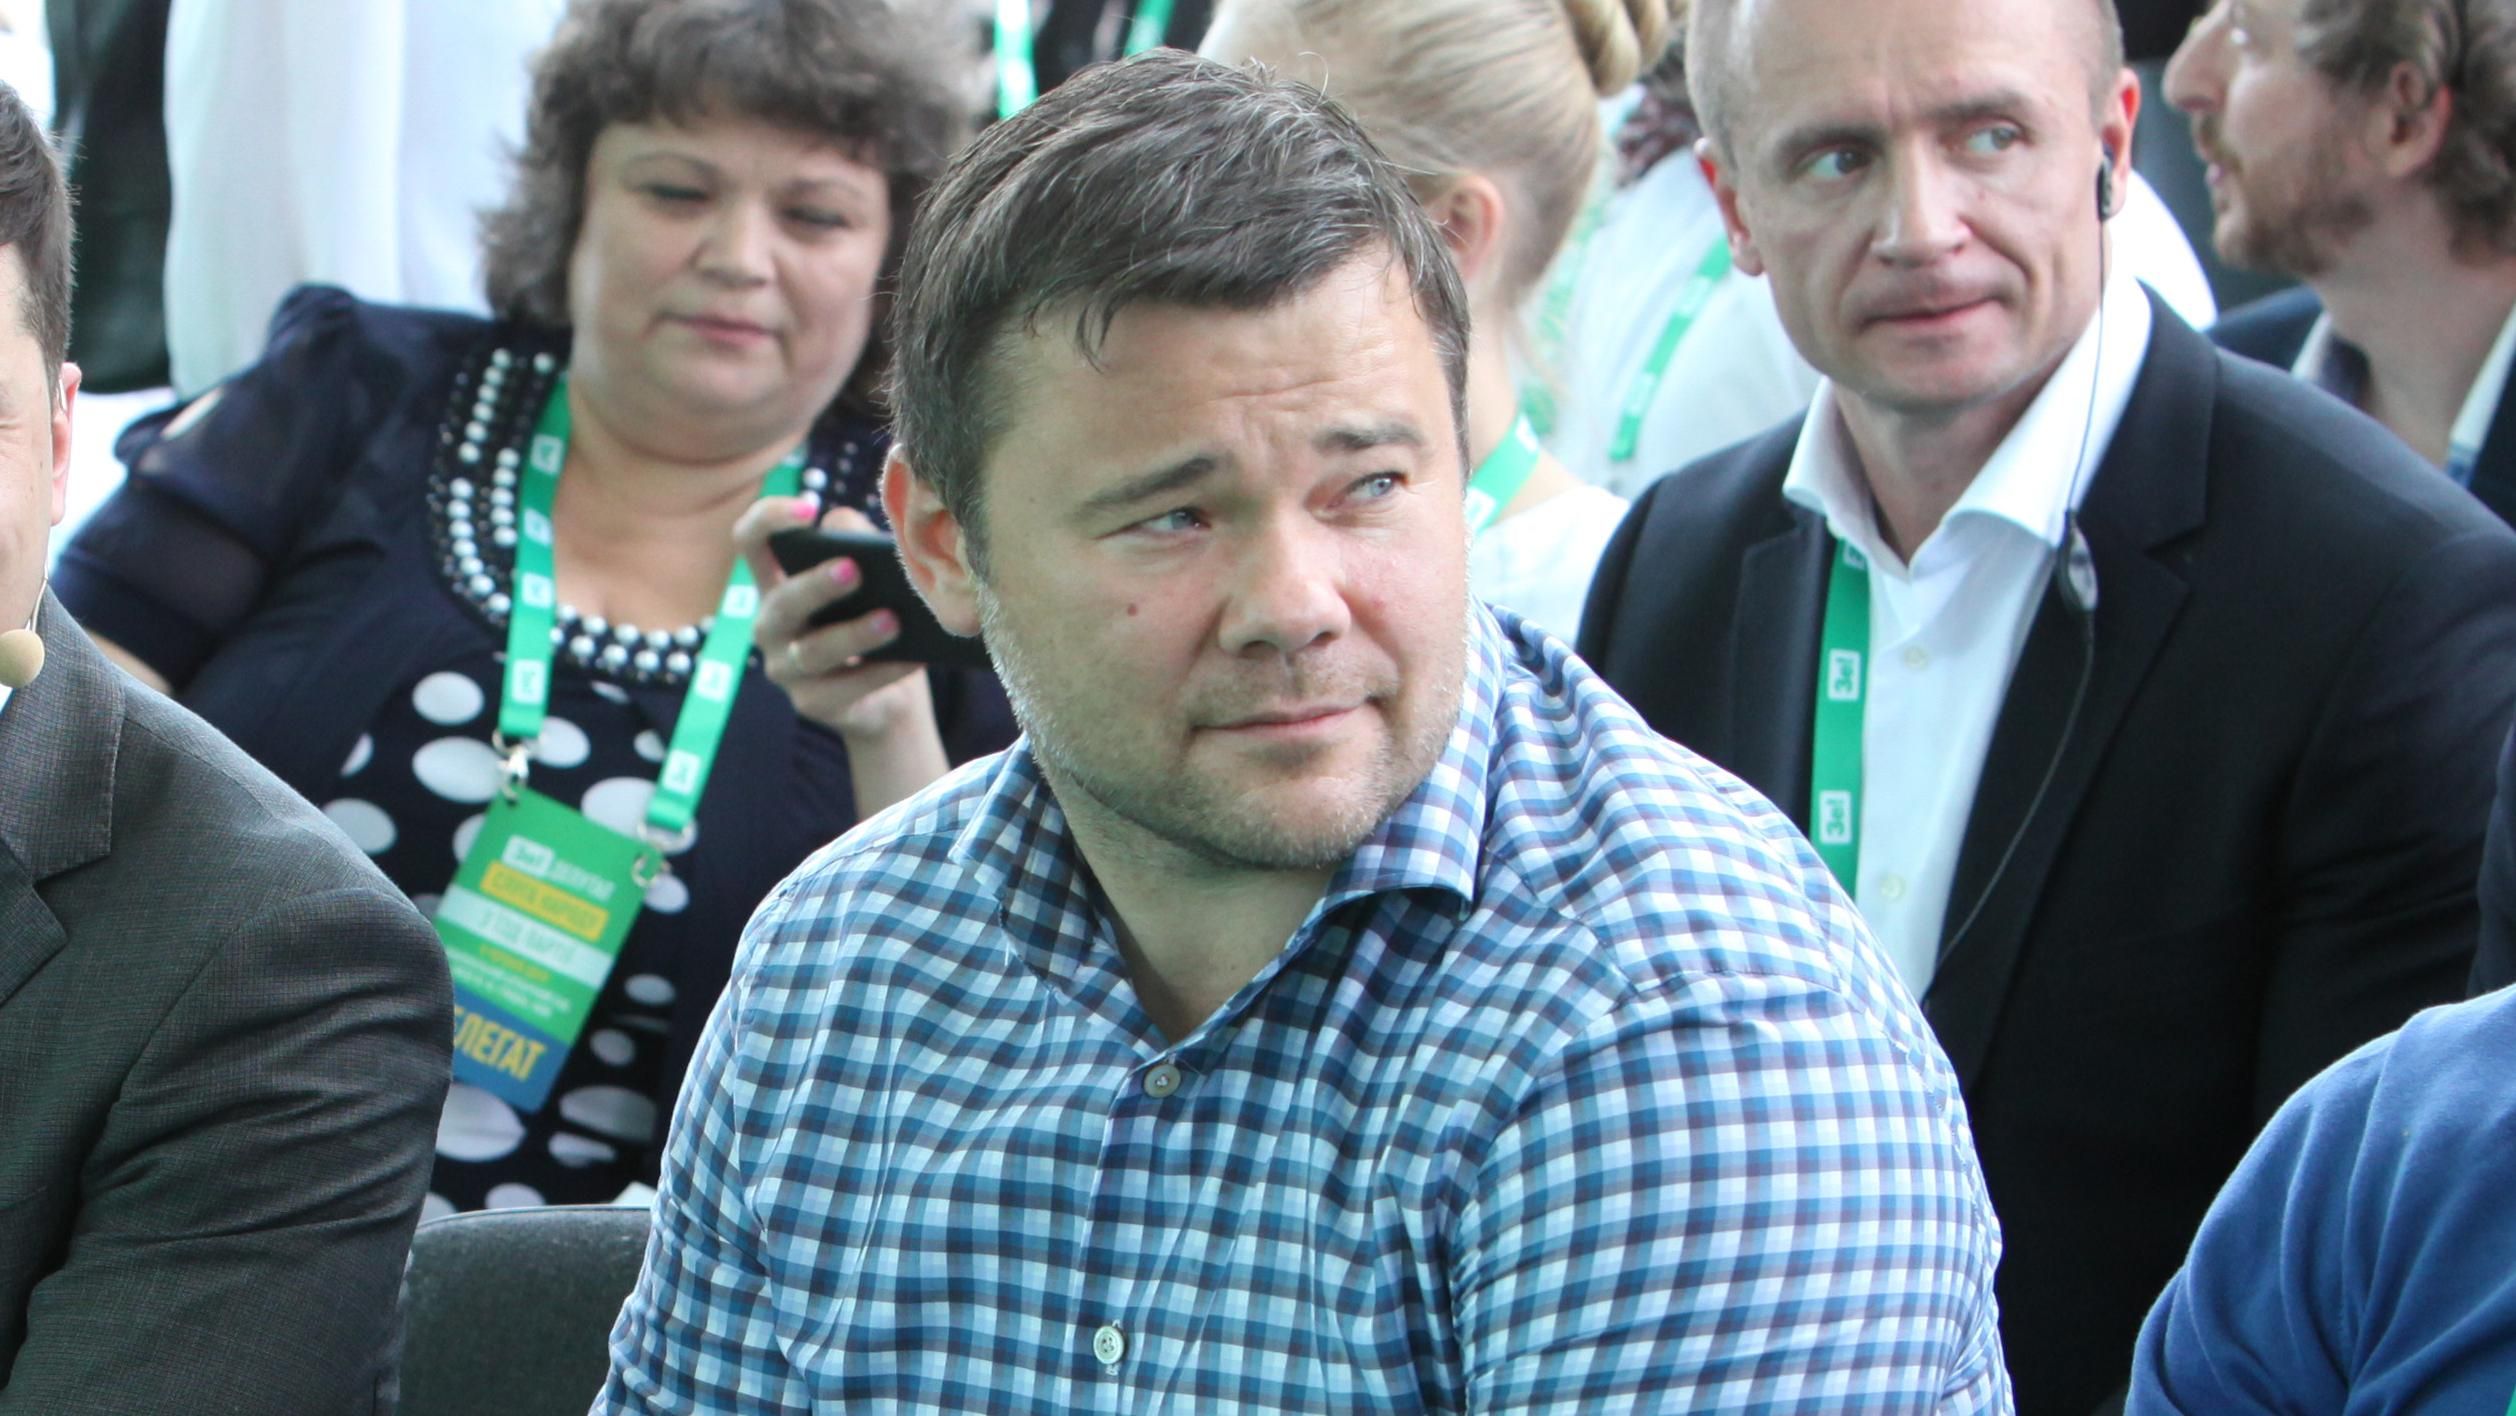 Богдан хотел затормозить расследование дел относительно Майдана и Януковича, – Горбатюк